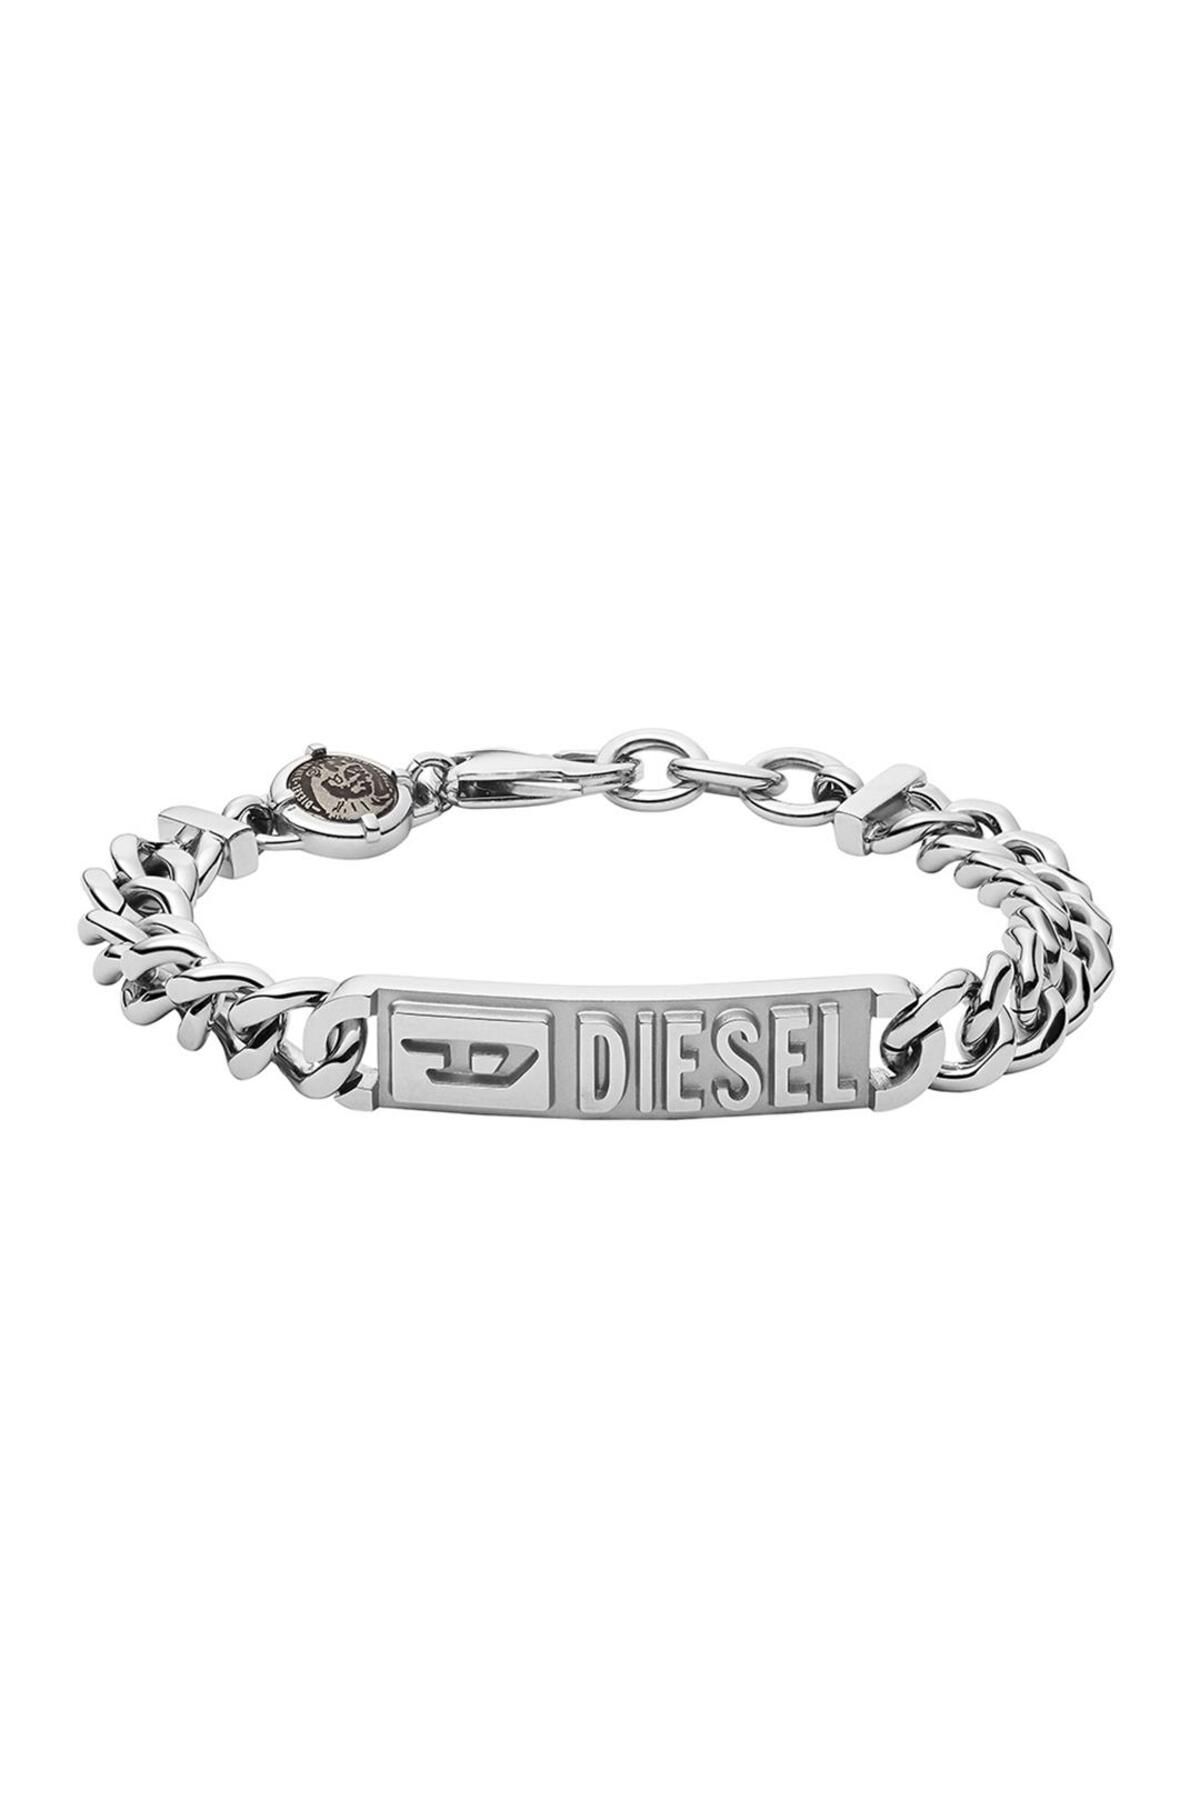 Shop DIESEL Unisex Street Style Bracelets by nopple | BUYMA